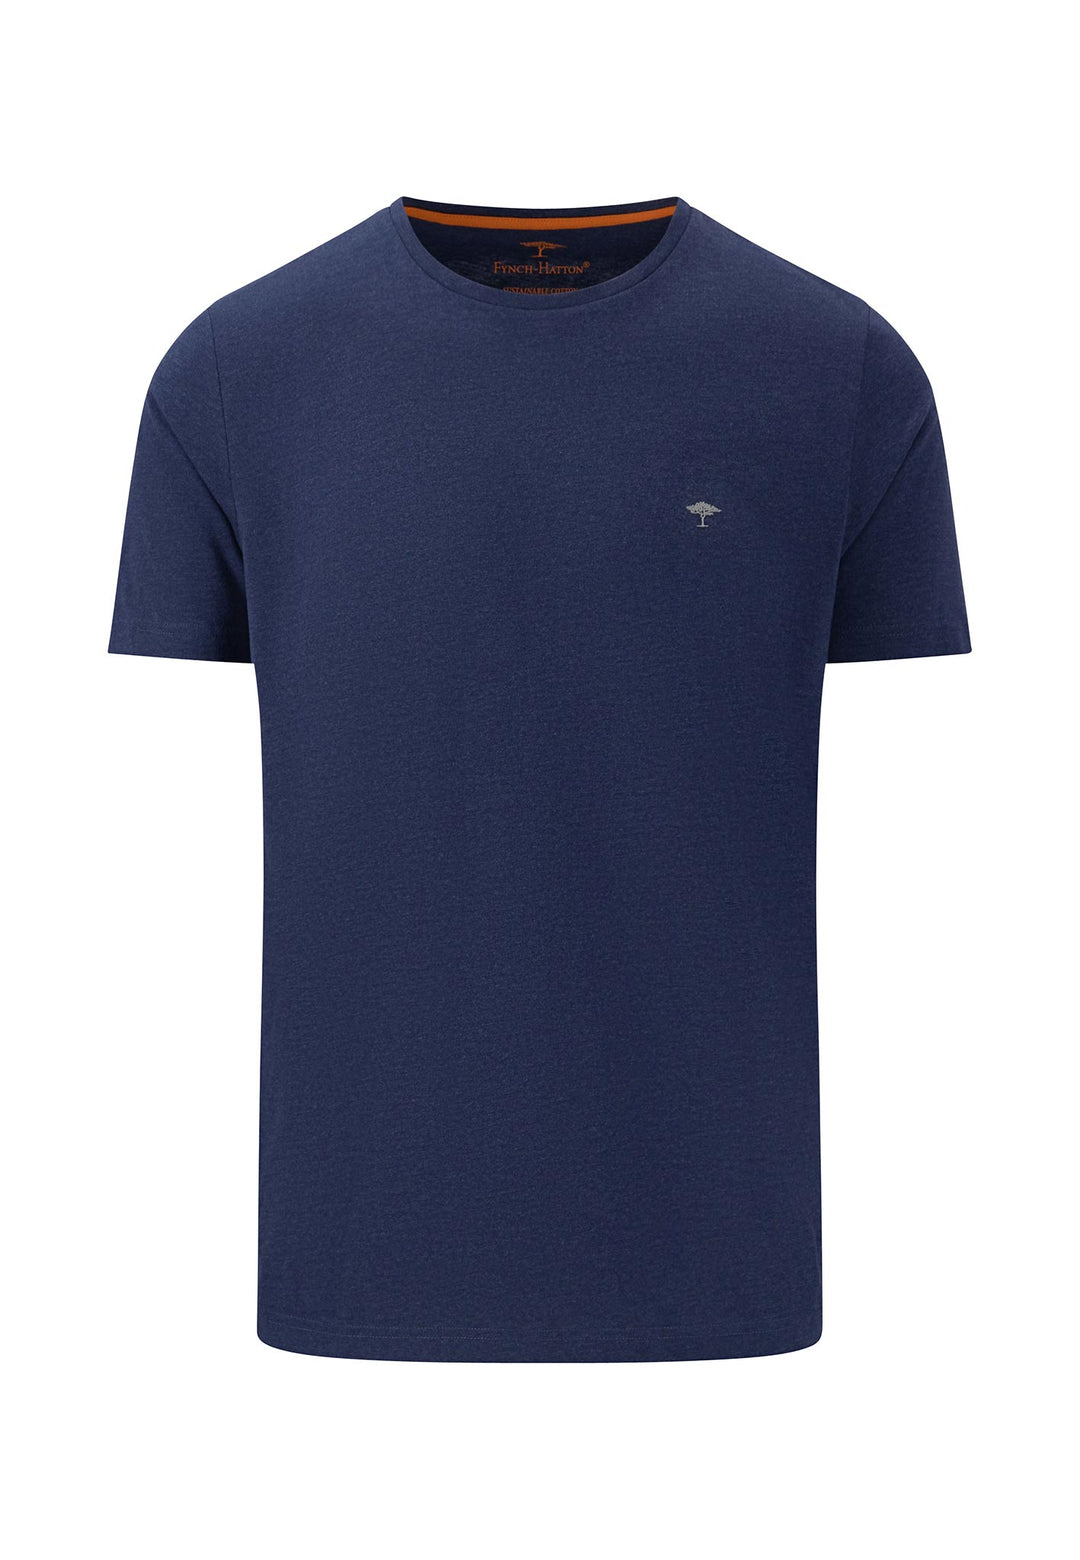 Basic crew neck t-shirt – FYNCH-HATTON Offizieller Shop | Online